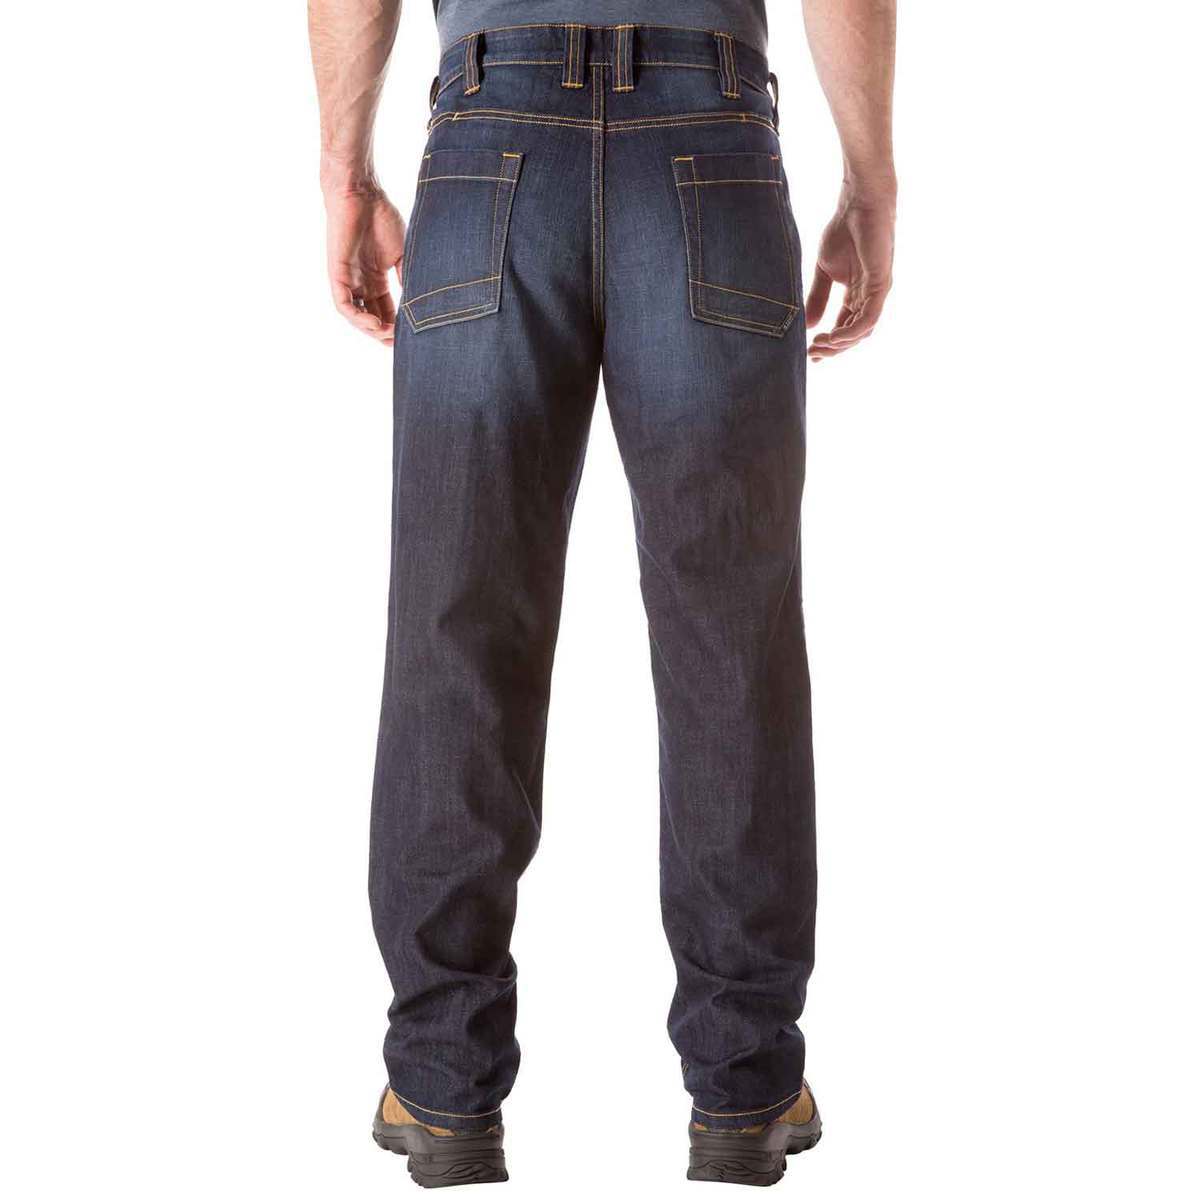 5.11 Men's Defender Flex Fitted Straight Jeans - Dark Wash Indigo ...